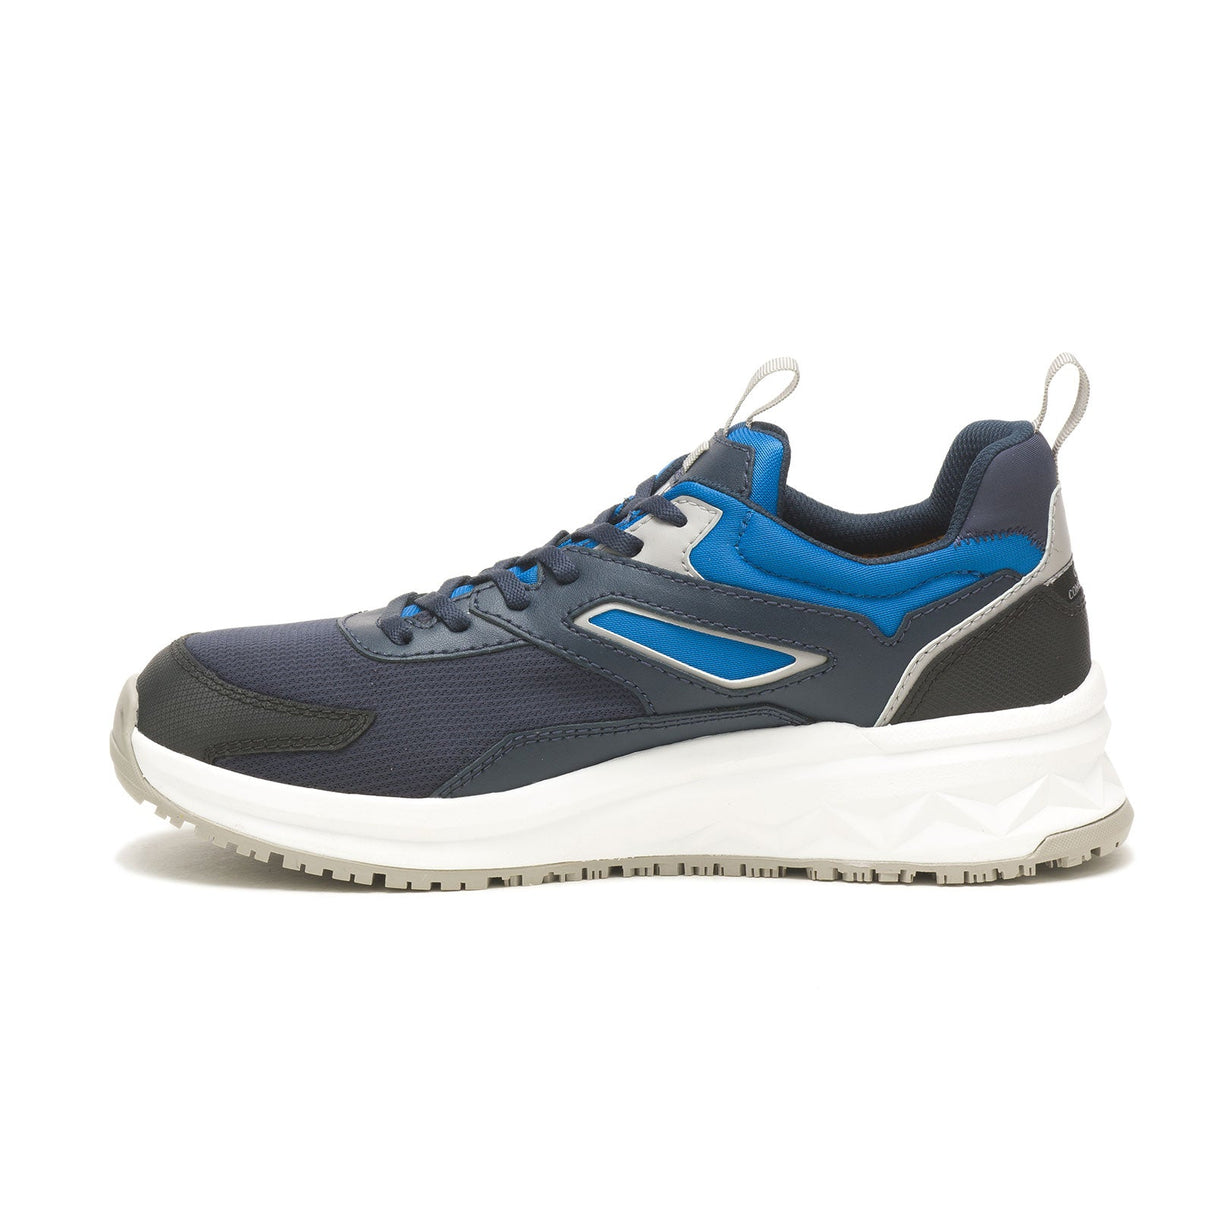 Caterpillar Streamline Runner Men's Composite-Toe Work Shoes P91609-4